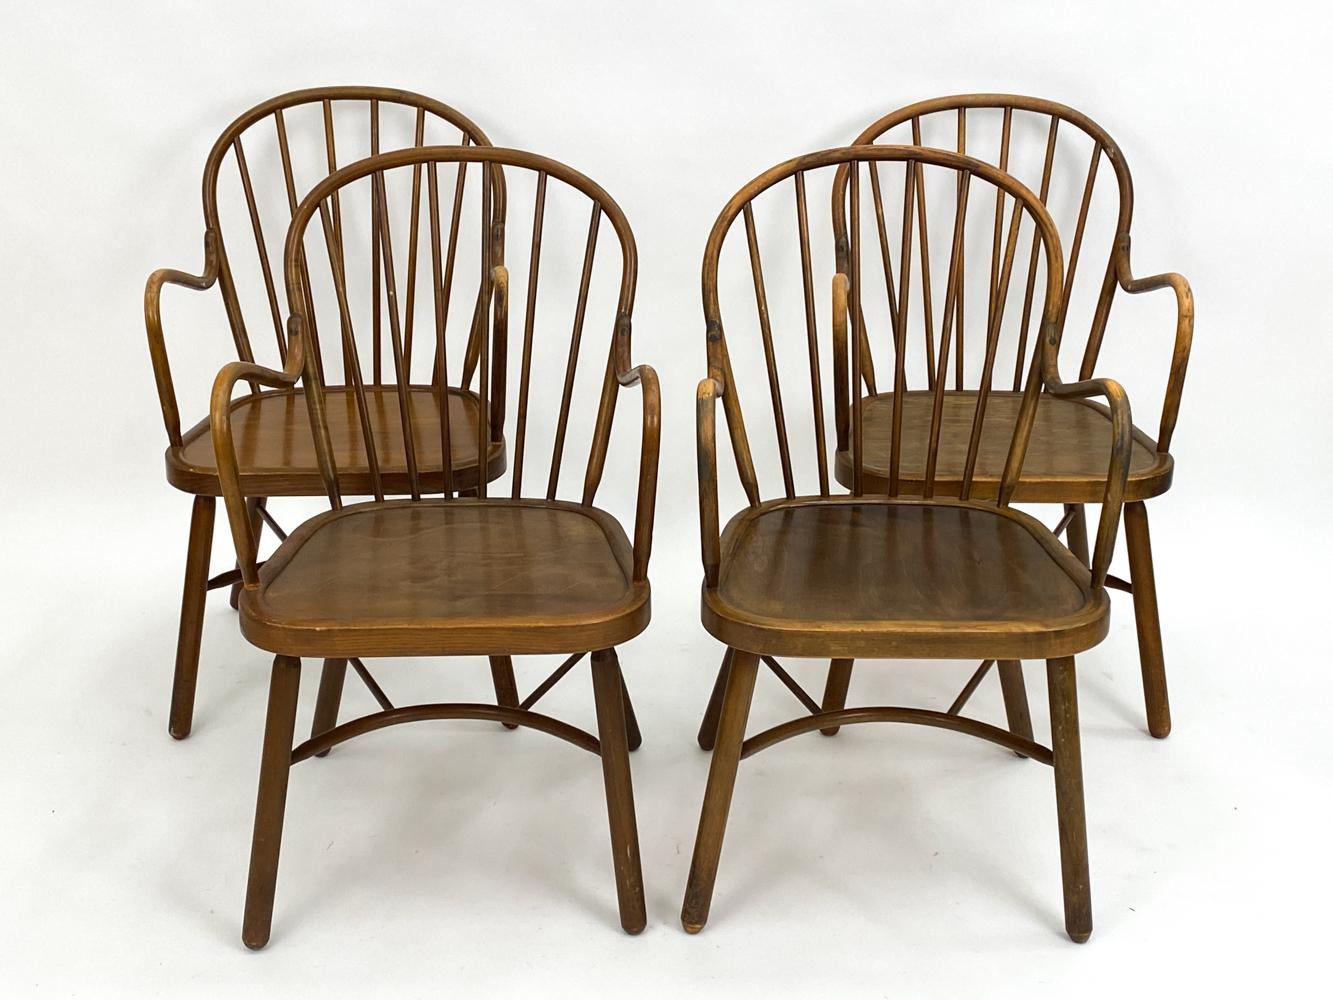 Profitez de l'élégance intemporelle de ces quatre chaises Windsor en hêtre, conçues avec art à la manière de l'illustre Frits Henningsen. Fabriquée avec précision et passion, chaque chaise émane un charme rappelant la modernité du milieu du siècle,